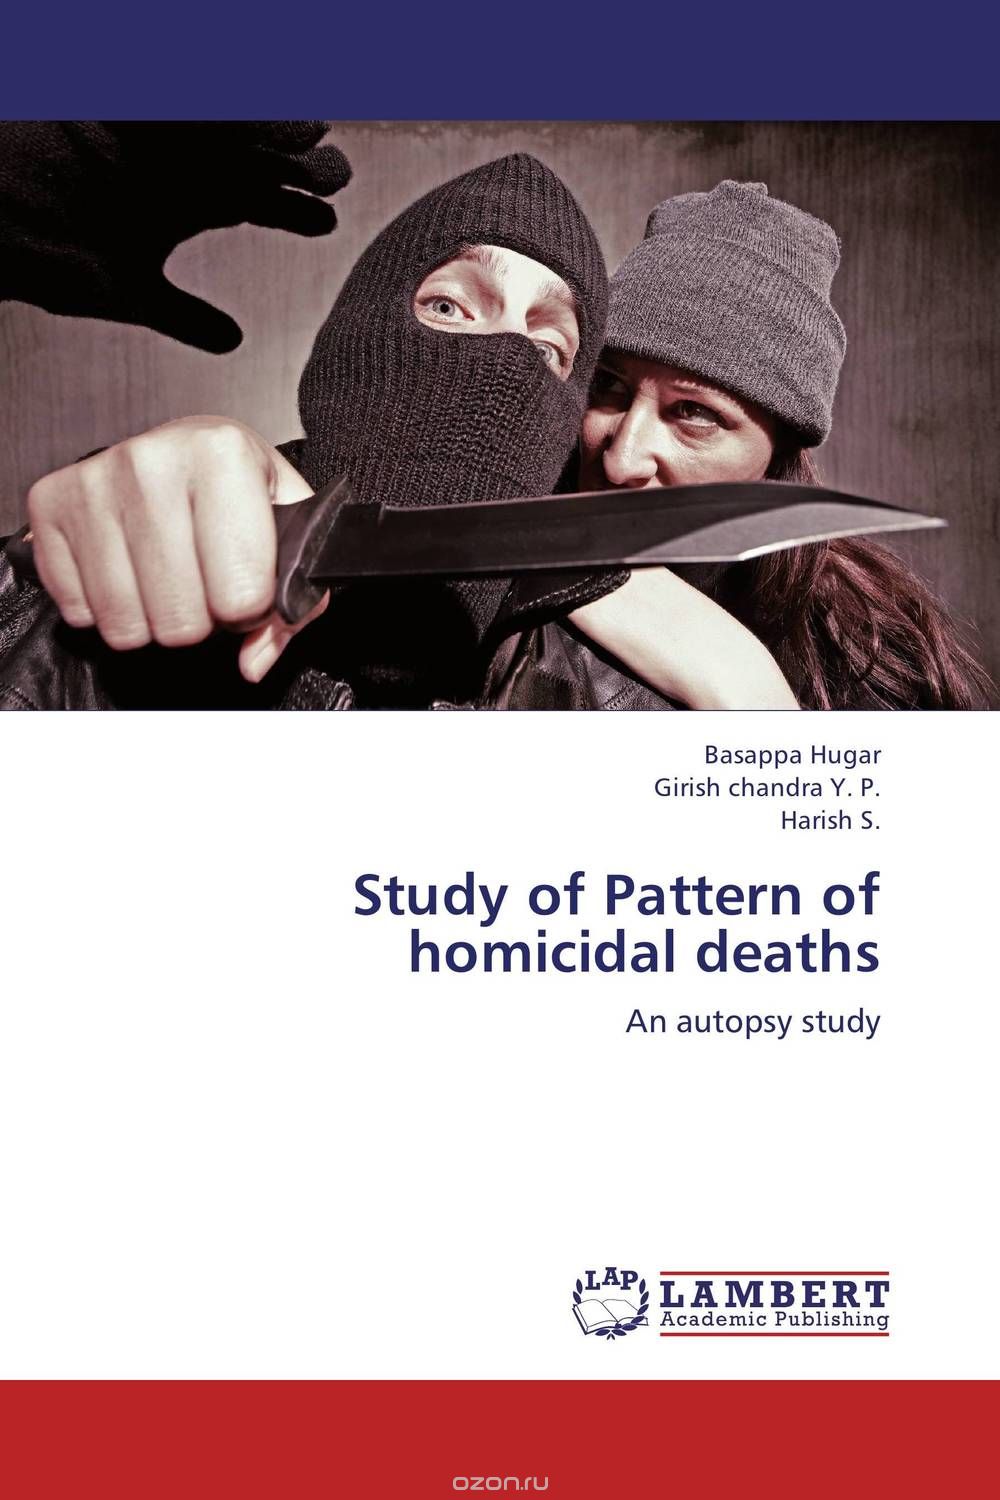 Скачать книгу "Study of Pattern of homicidal deaths"